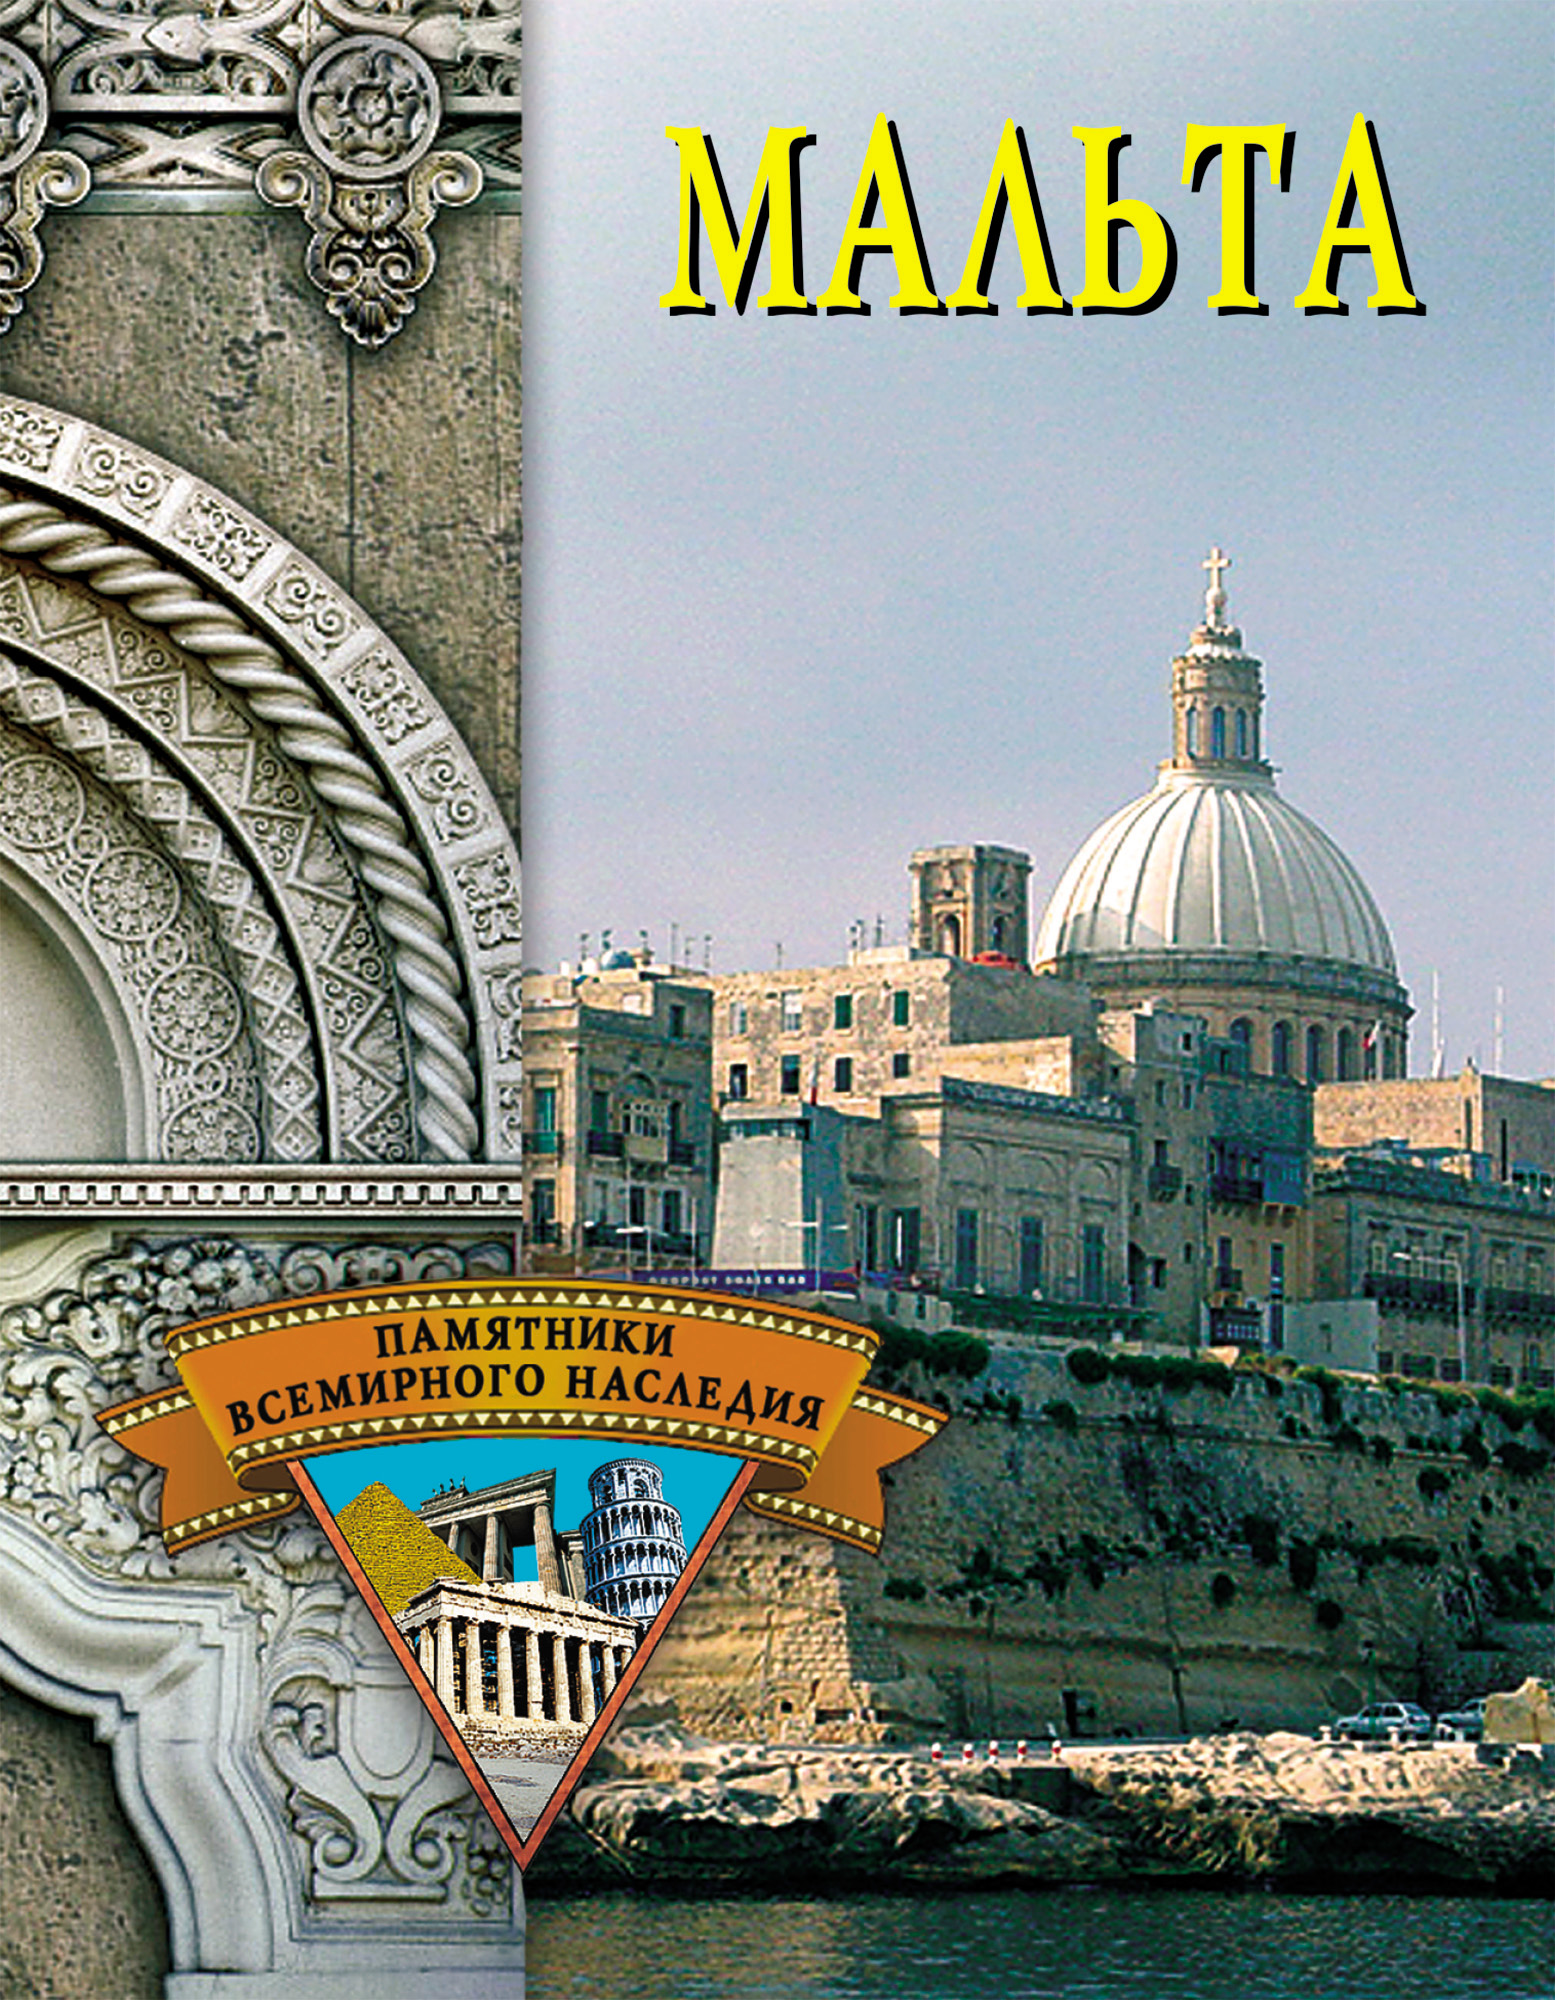 Книга Мальта из серии , созданная Елена Грицак, может относится к жанру Культурология, Архитектура, История, Путеводители. Стоимость книги Мальта  с идентификатором 167445 составляет 99.00 руб.